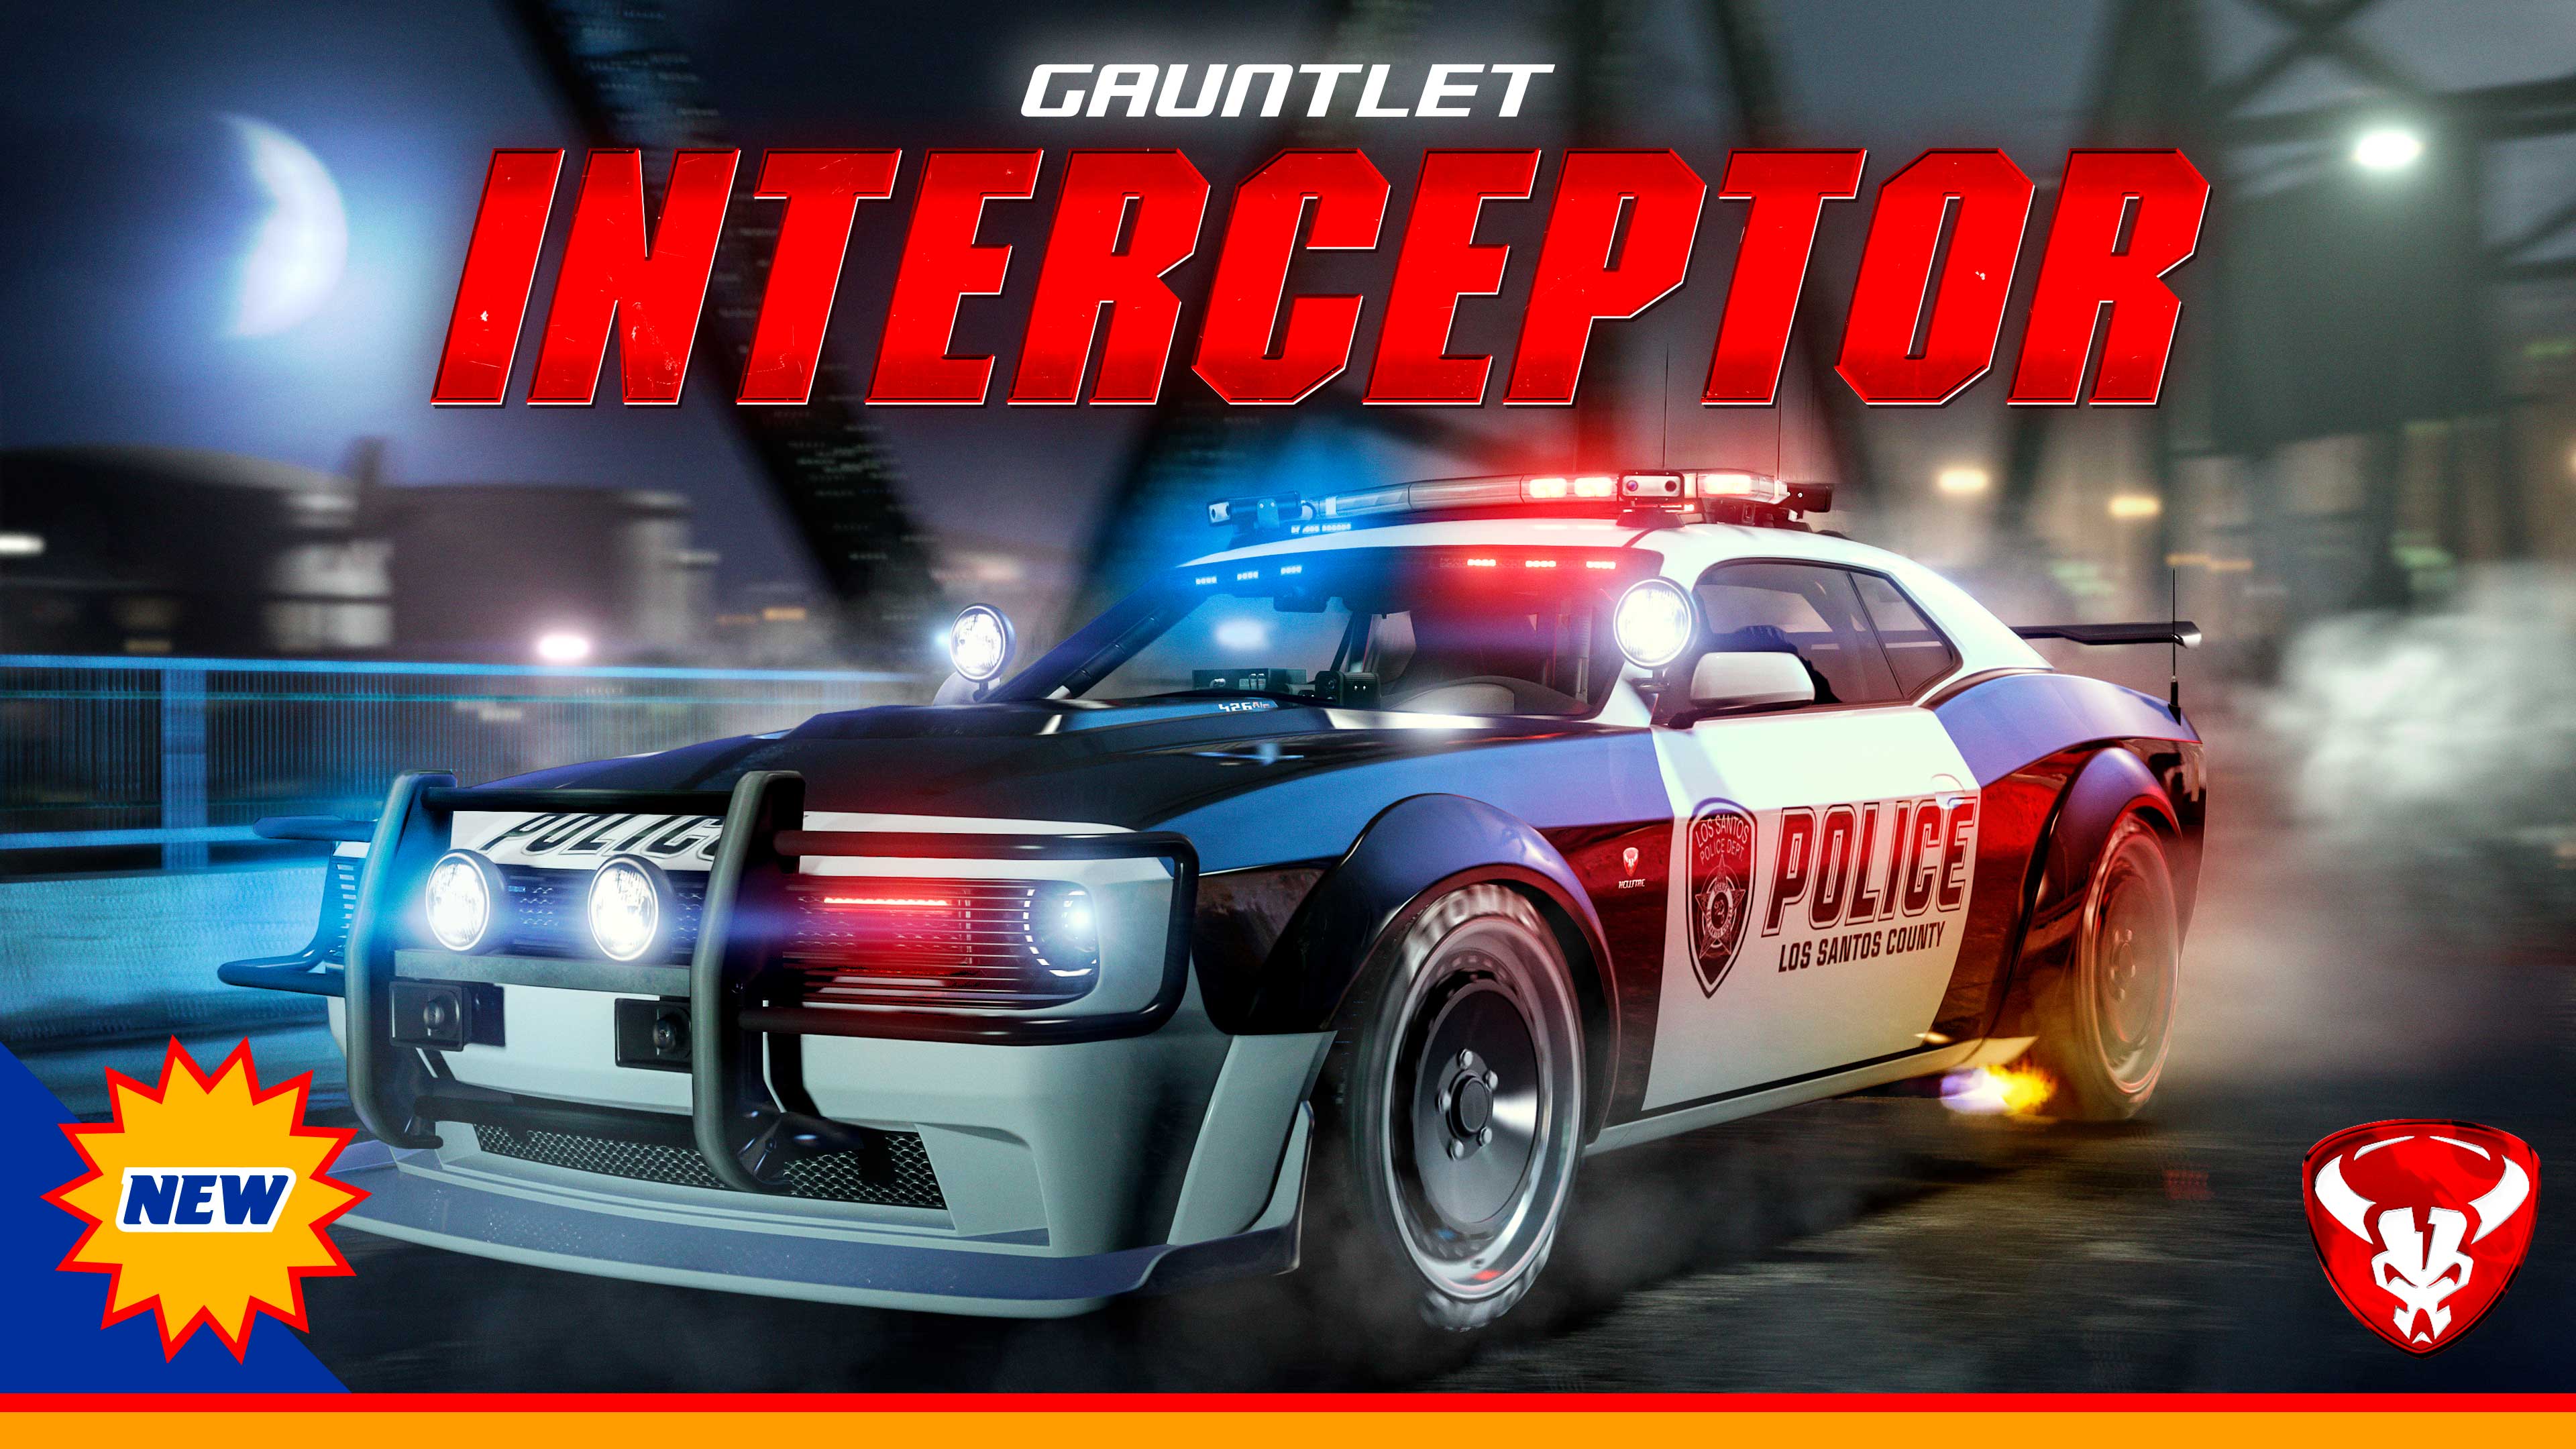 Veículo policial Bravado Gauntlet Interceptor.